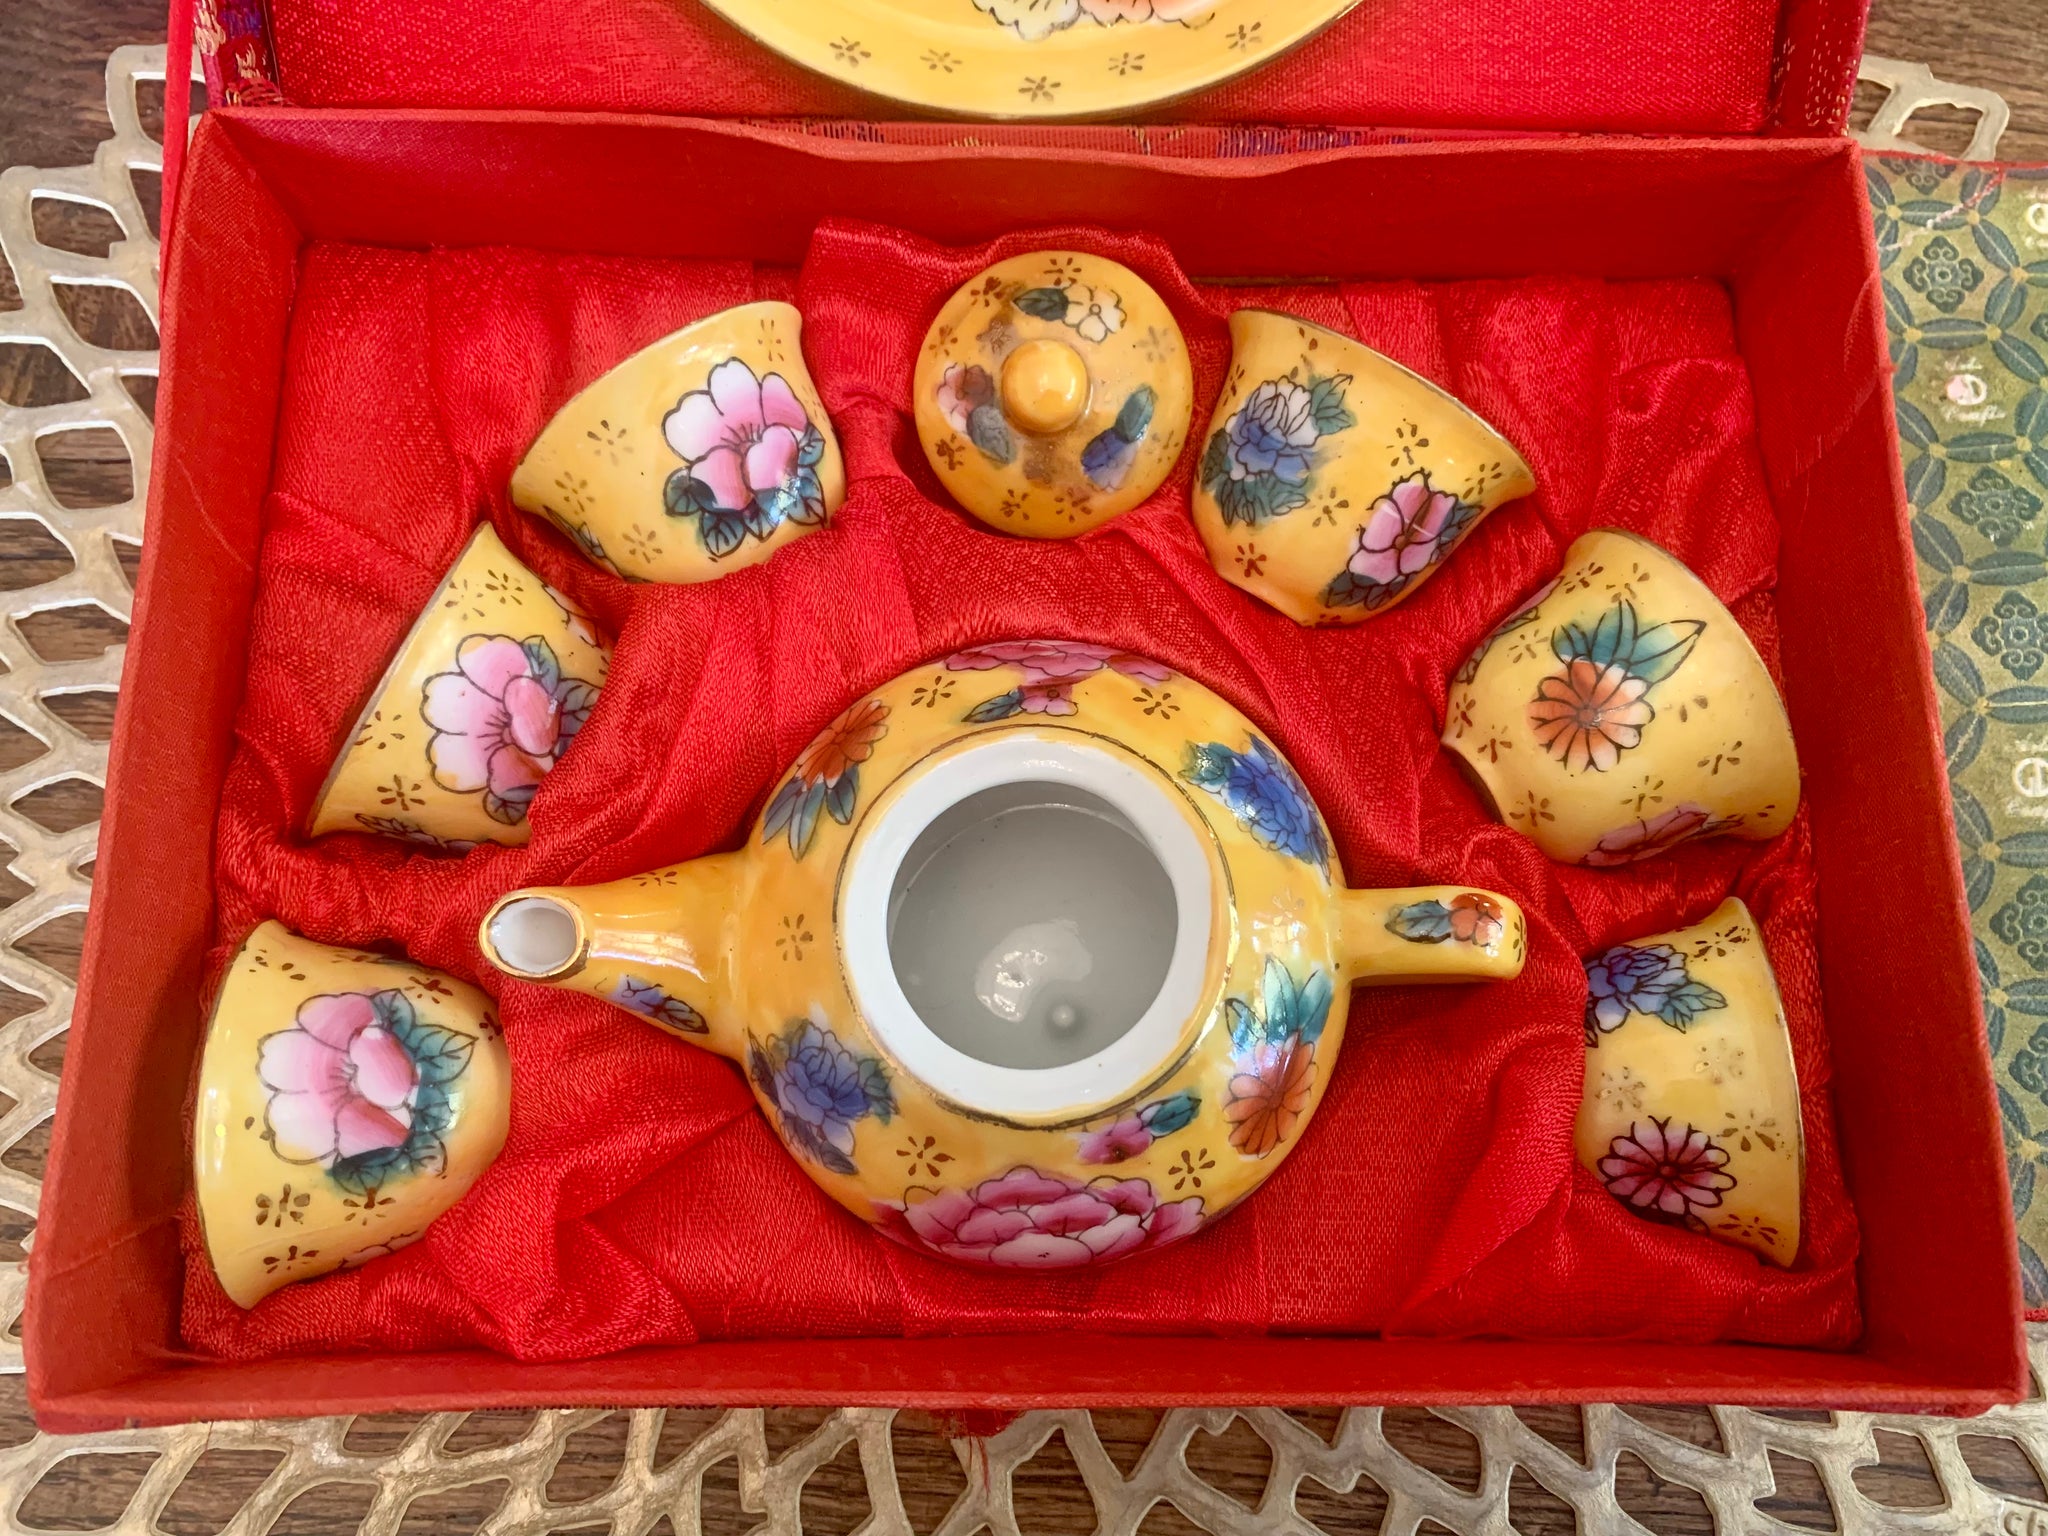 Miniature Teapot Saki Cups Set Saki Teapot Cups Porcelain 